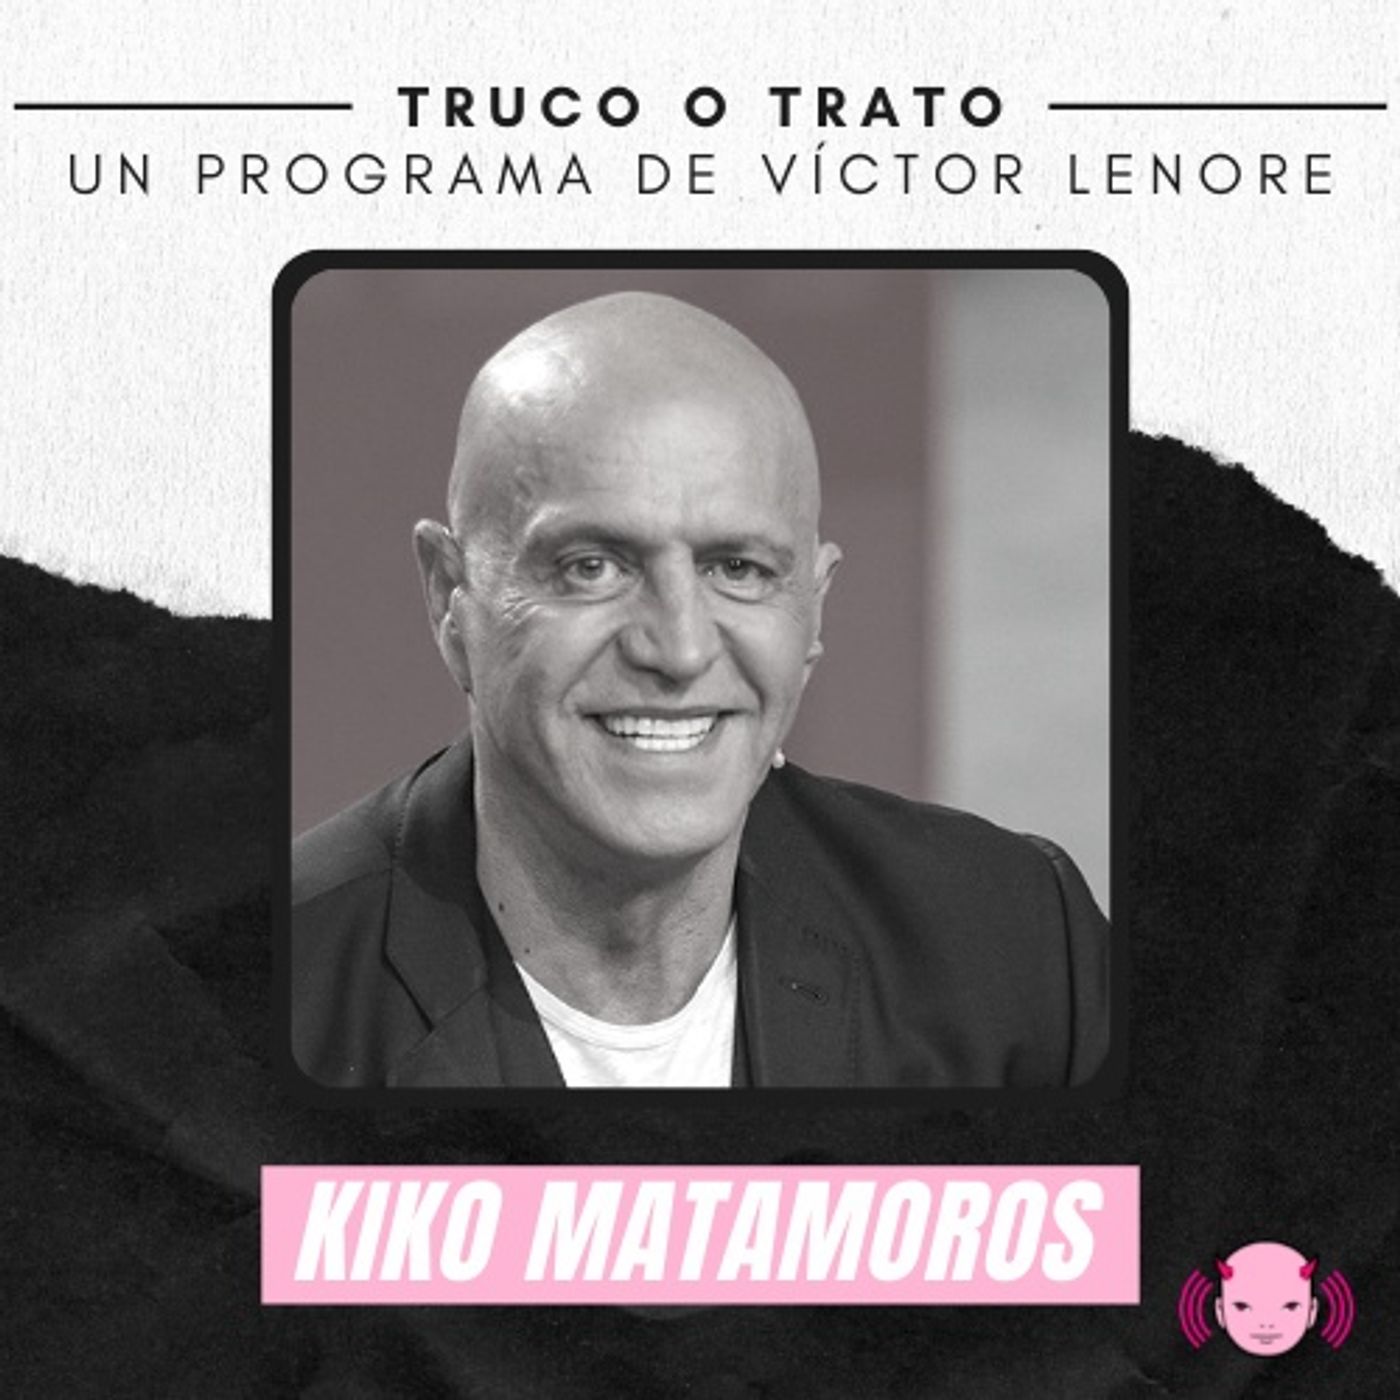 Truco o trato con Víctor Lenore #9: Kiko Matamoros